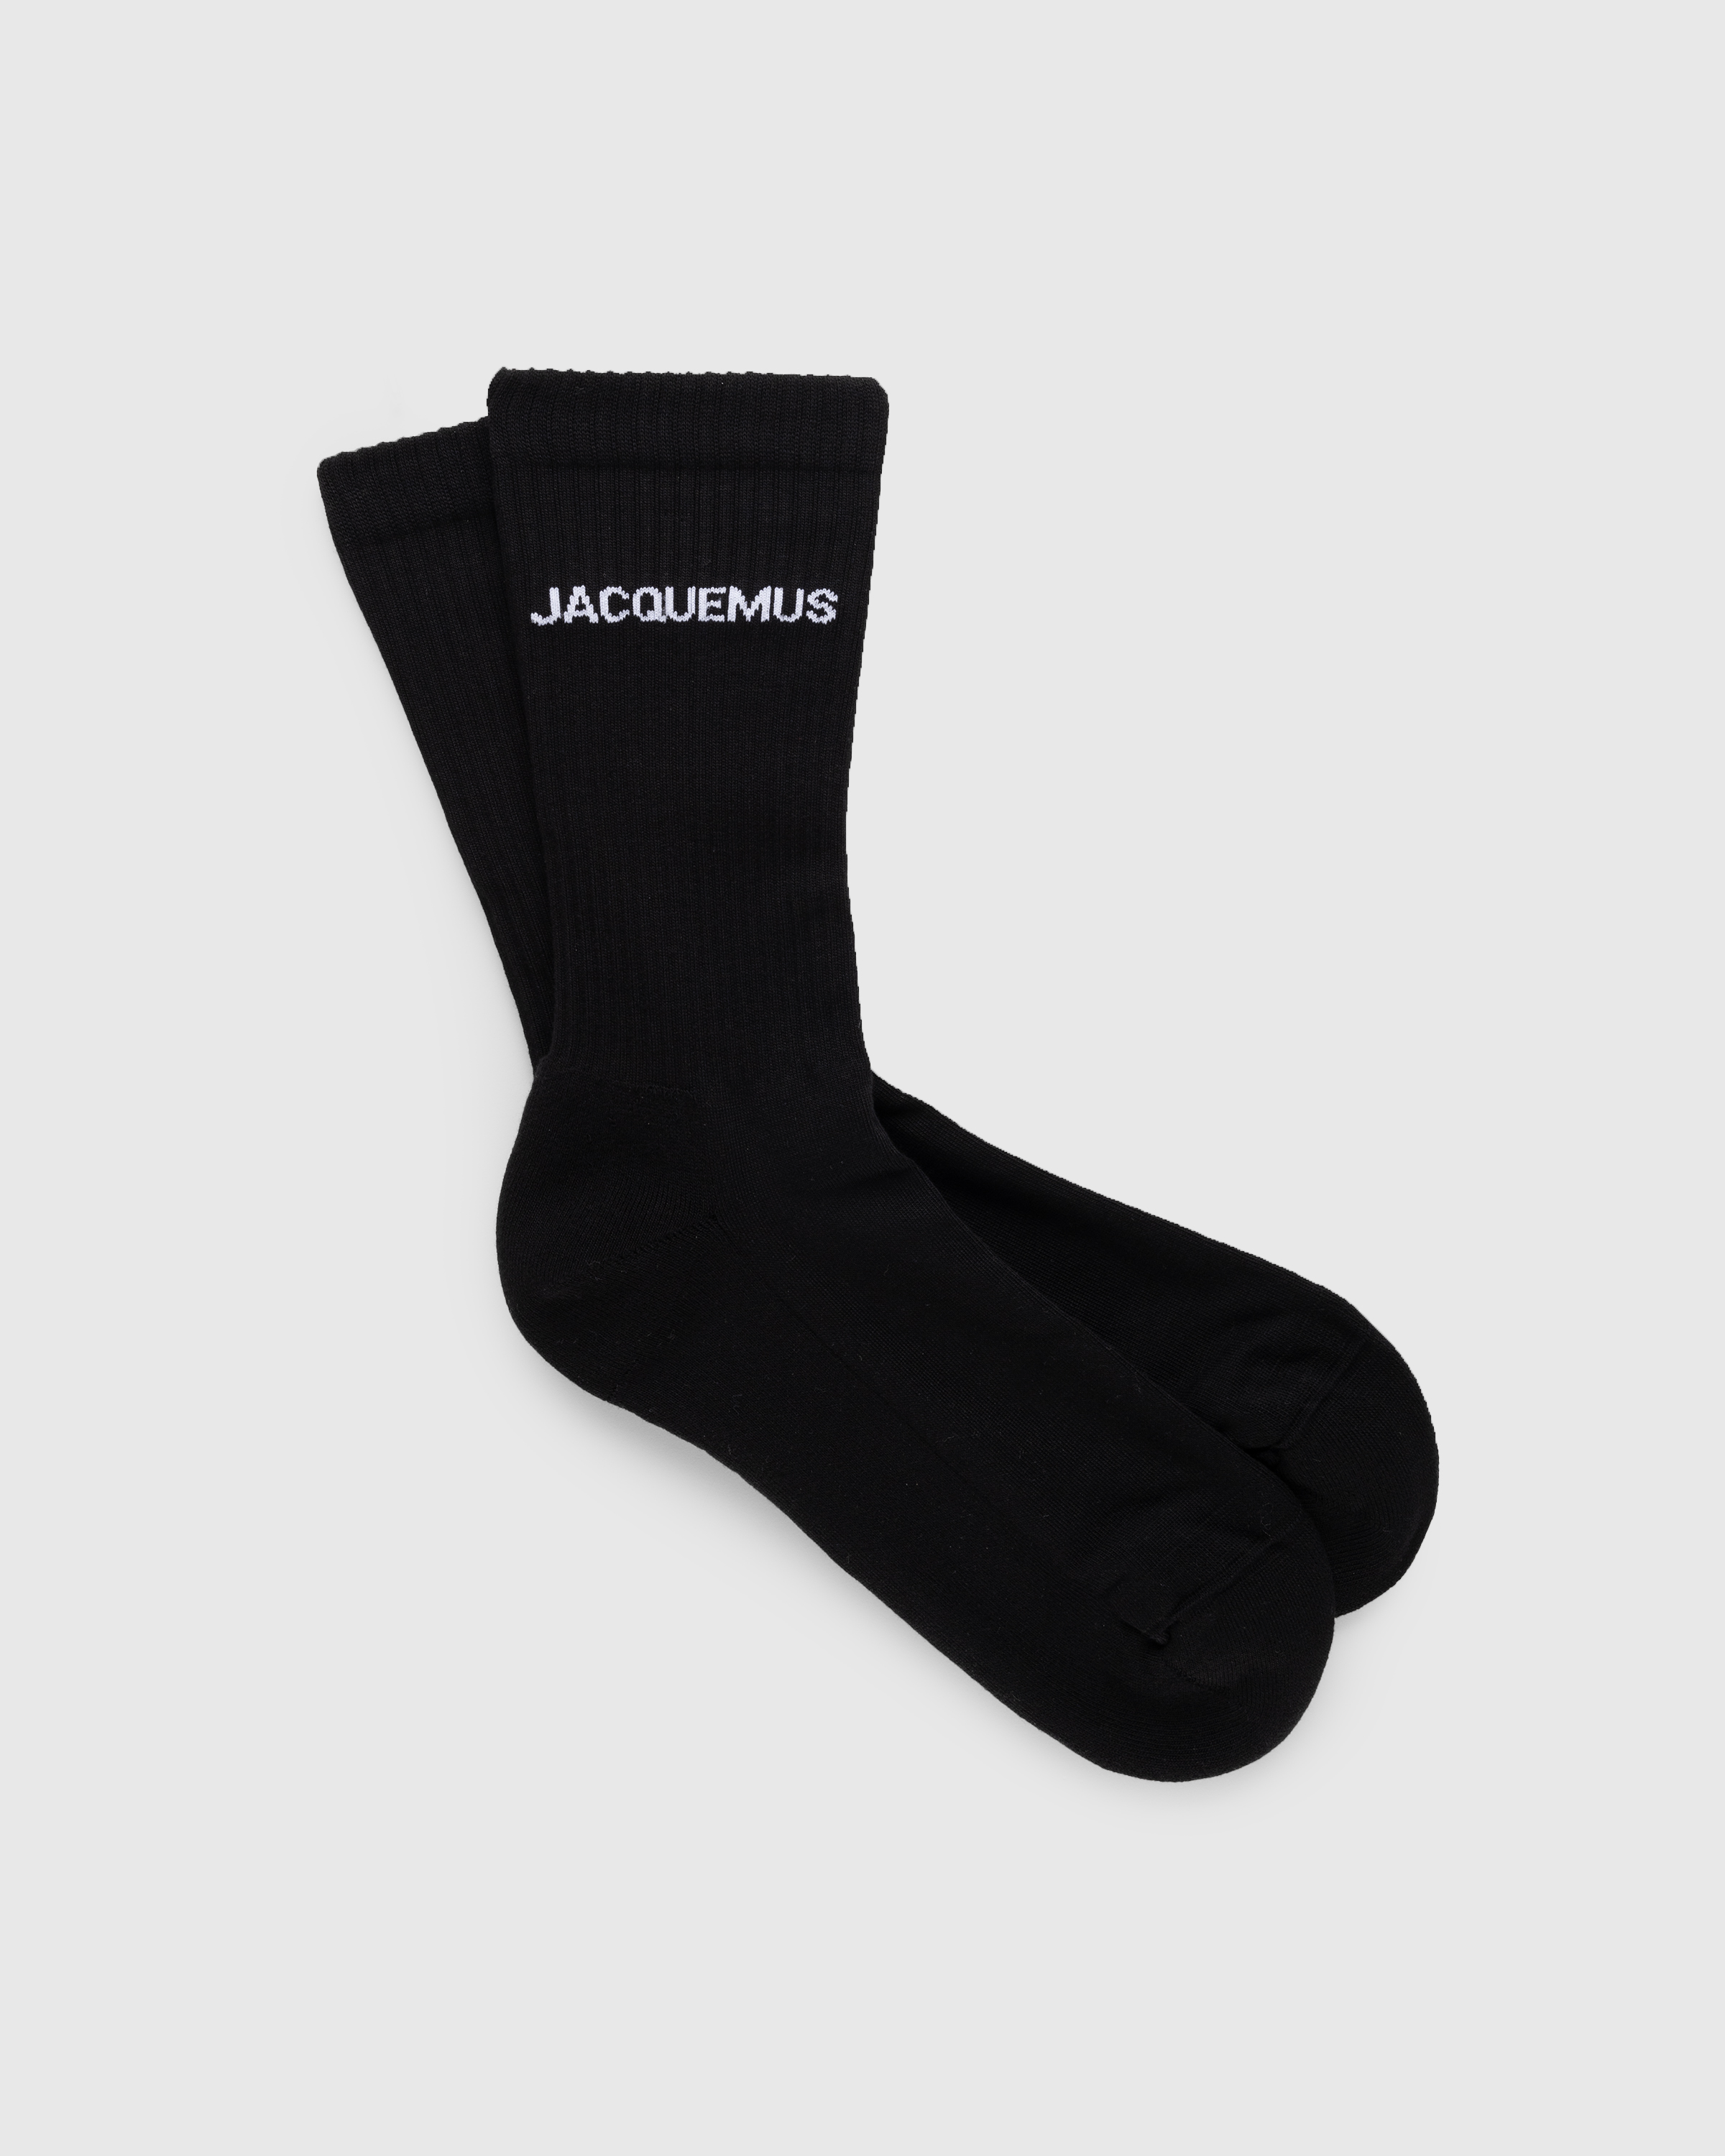 JACQUEMUS – Les Chaussettes Black - Ankle - Black - Image 1